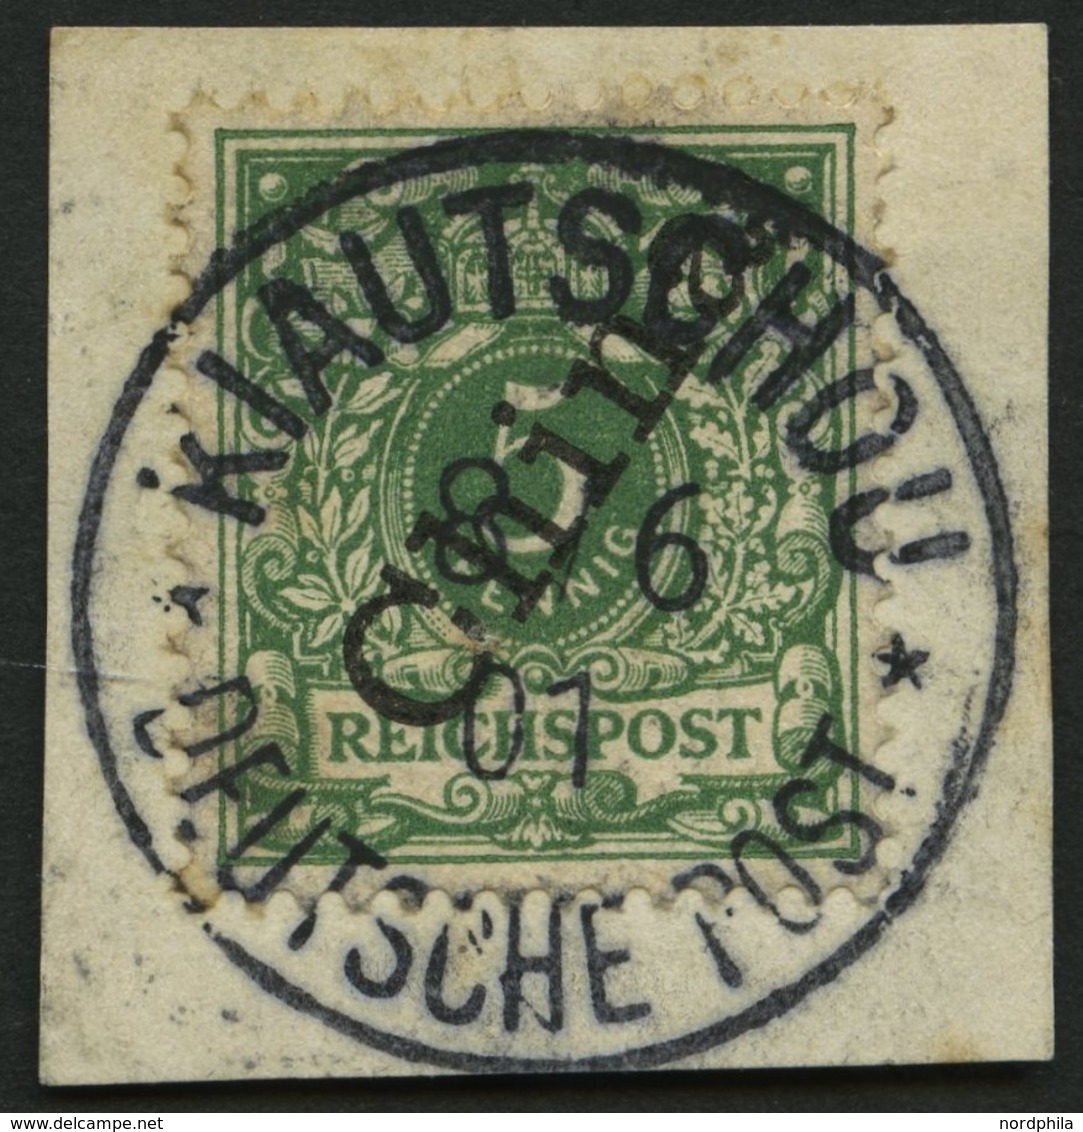 KIAUTSCHOU M 2II BrfStk, 1901, 5 Pf. Steiler Aufdruck, Stempel KIAUTSCHOU DP, Prachtbriefstück - Kiauchau